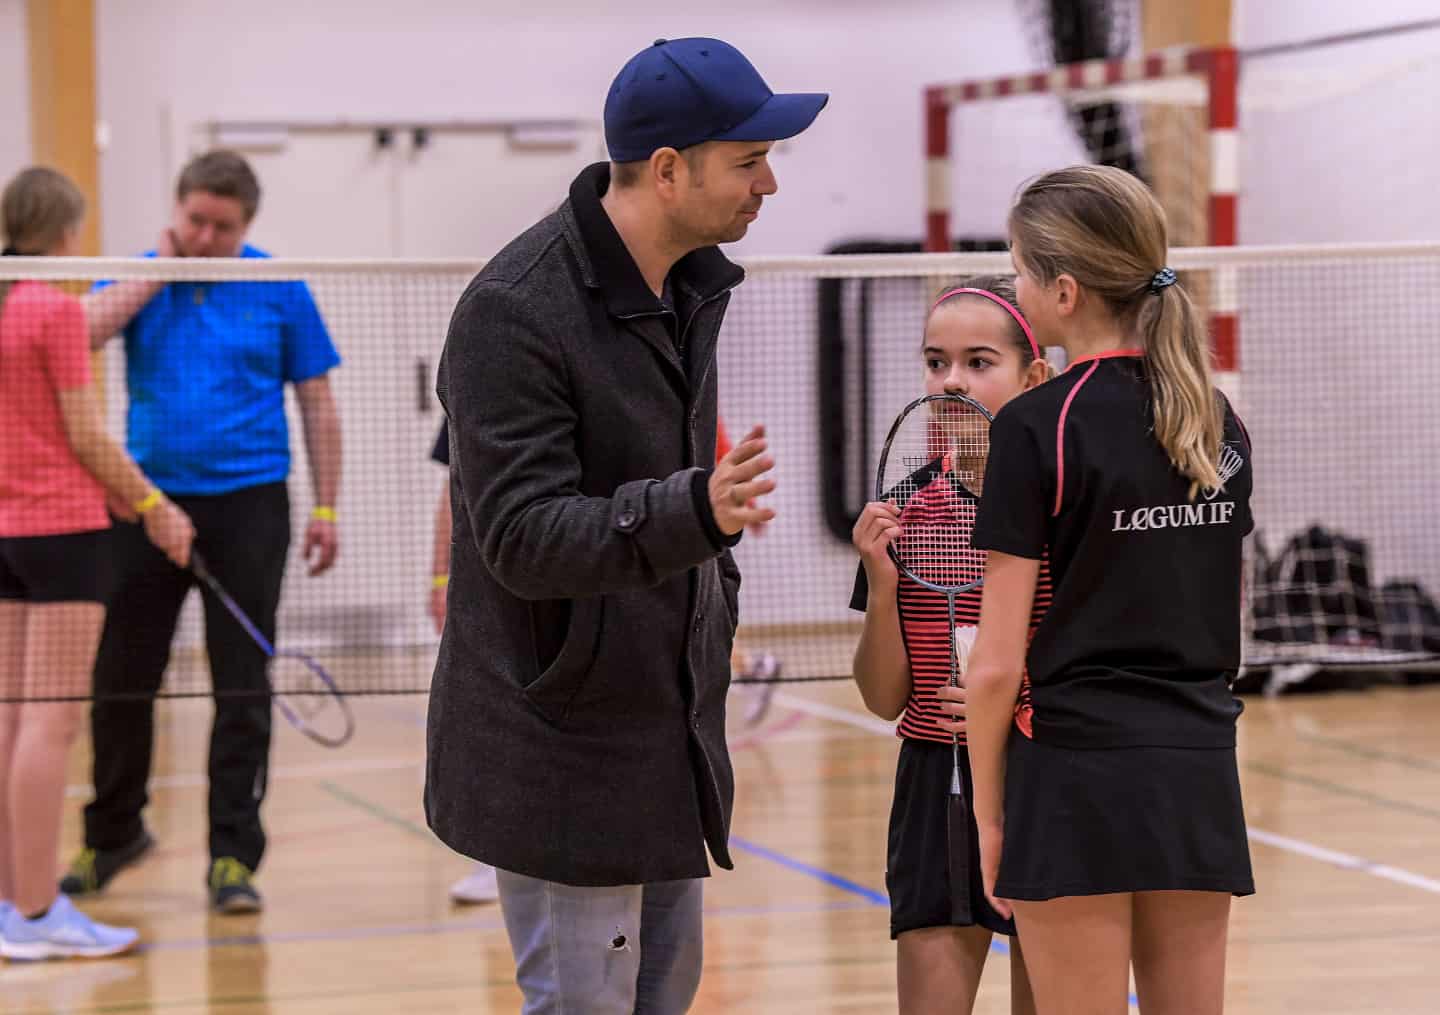 Badminton og hygge på plan | jv.dk